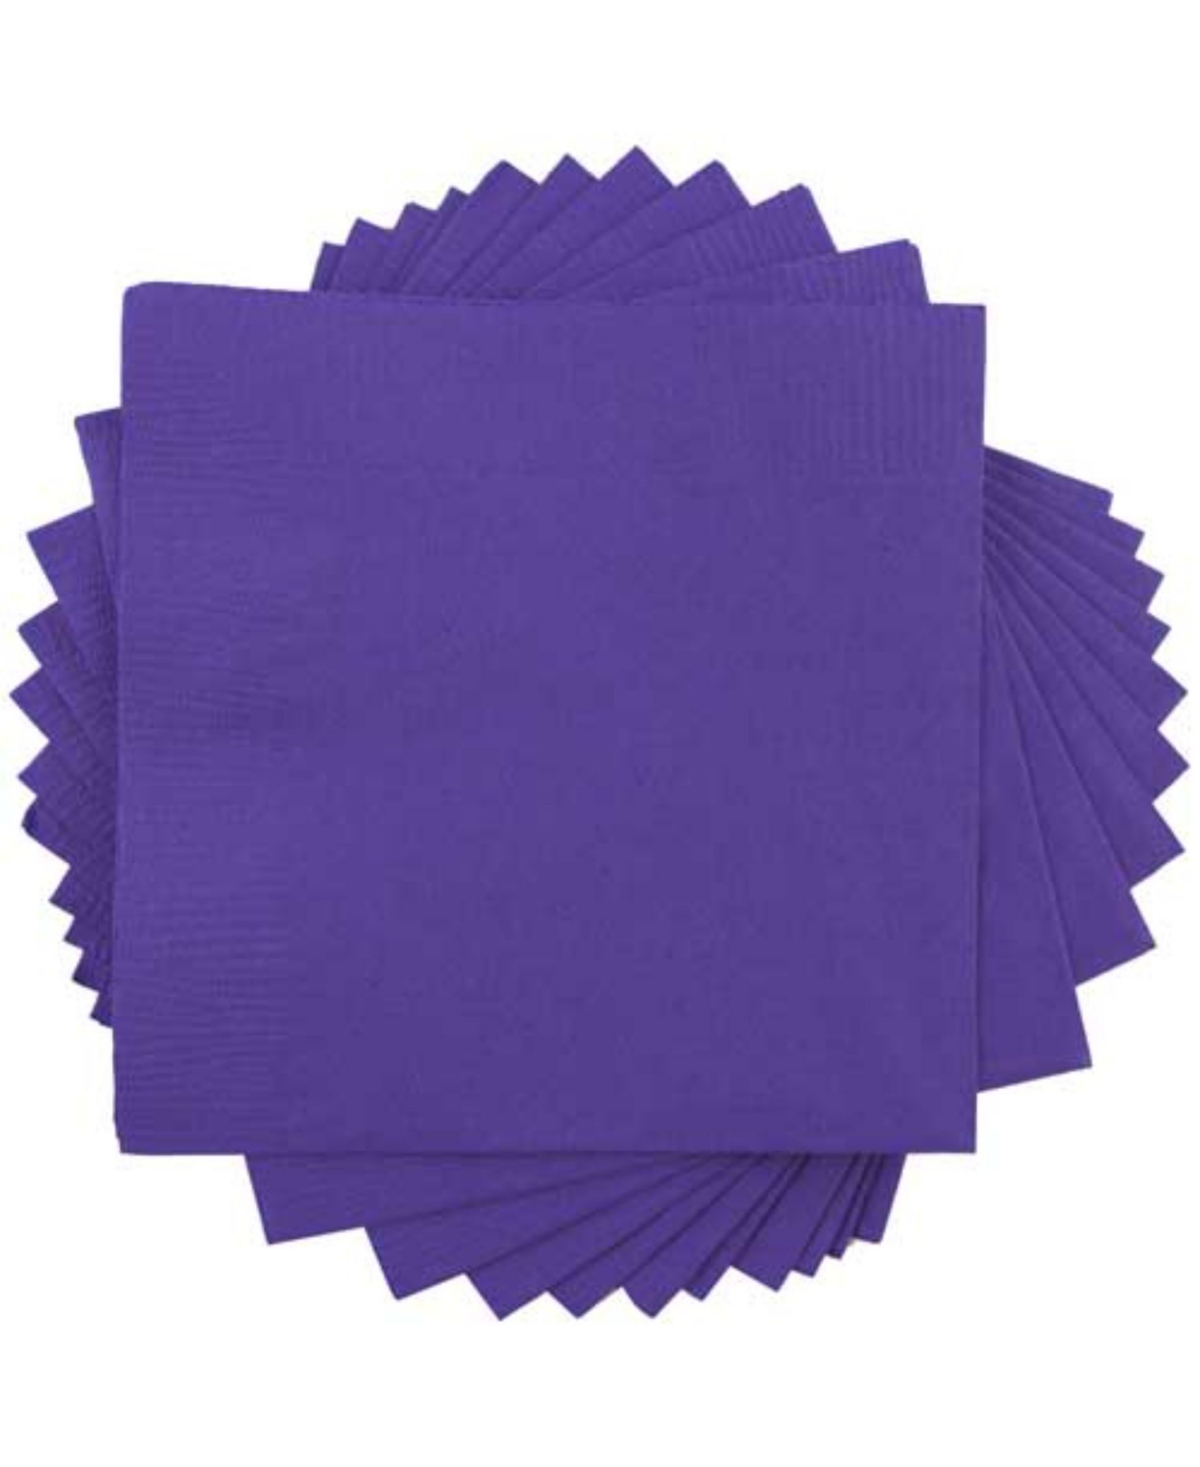 Shop Jam Paper Medium Lunch Napkins In Purple